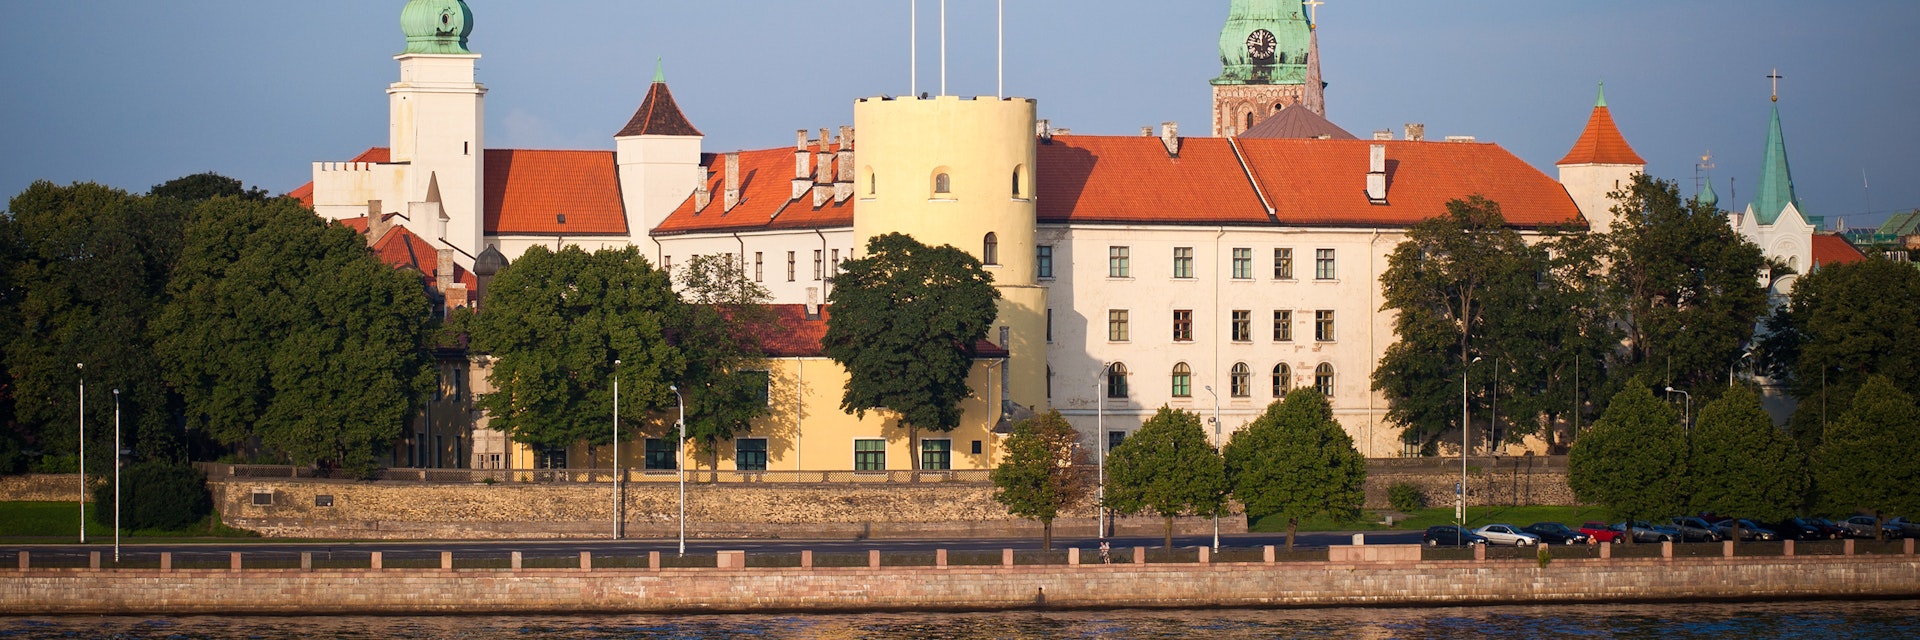 Riga Castle In Latvia